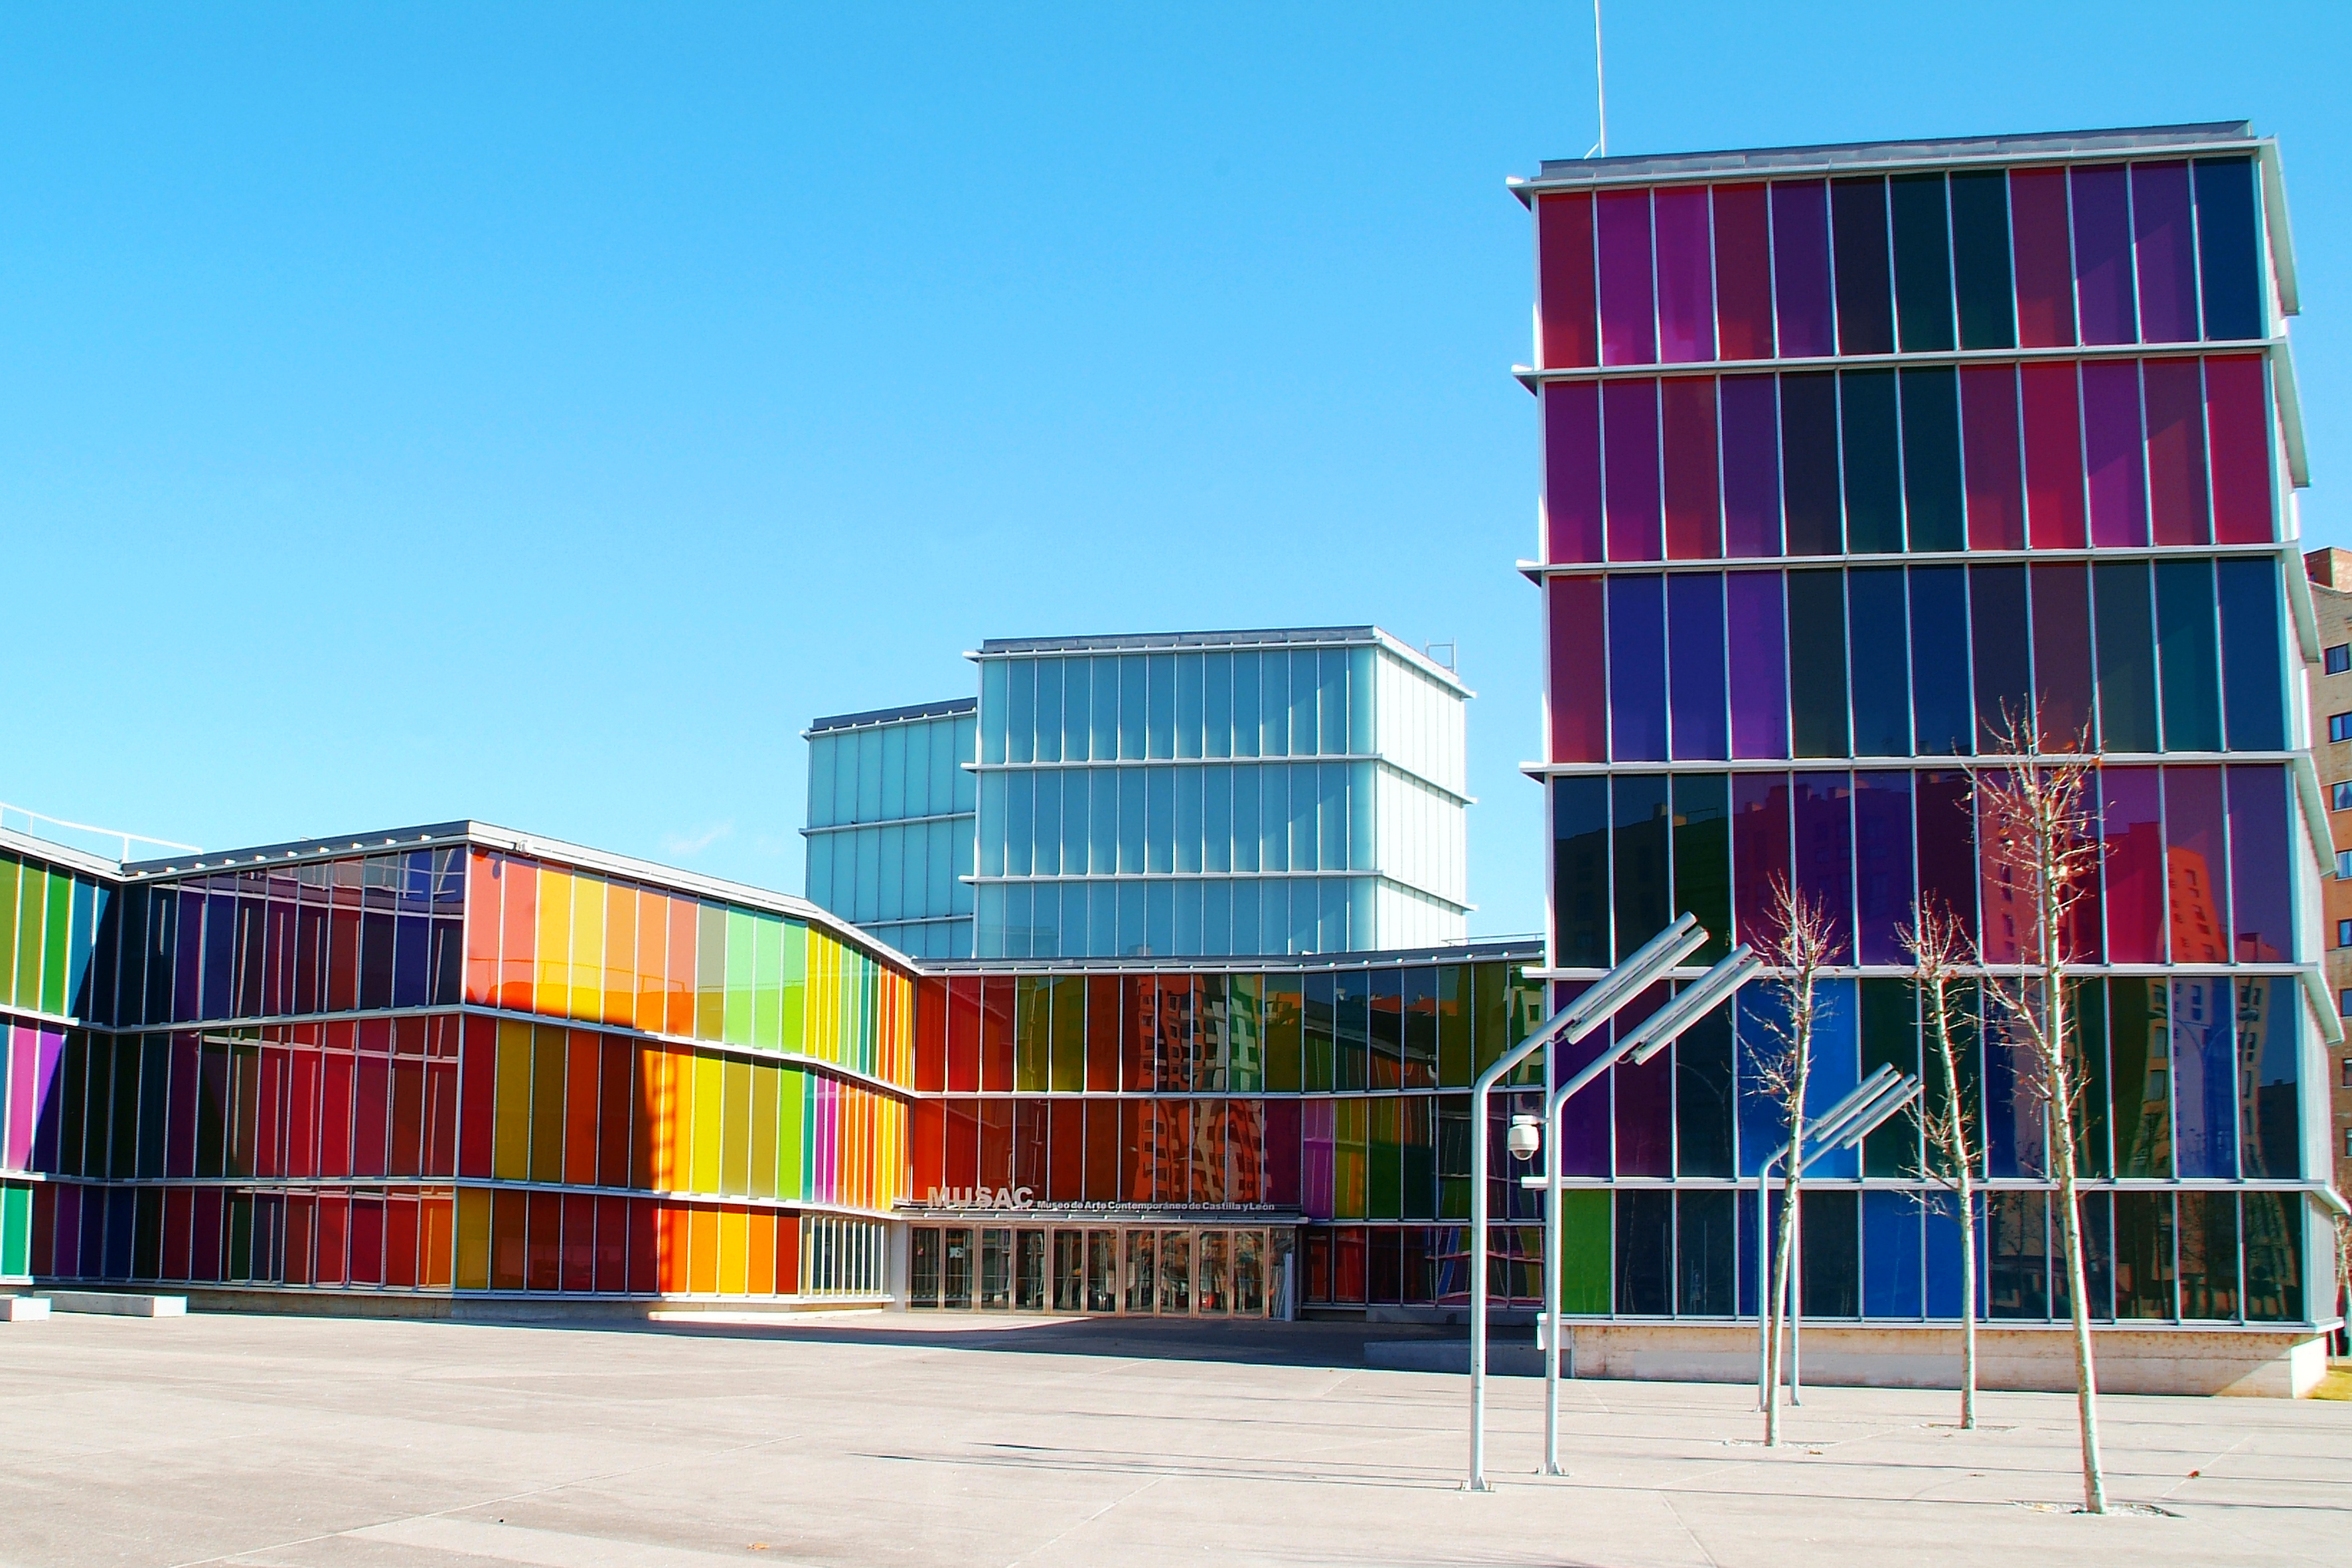 12 Amazingly Colorful Buildings | Virginia Duran Blog